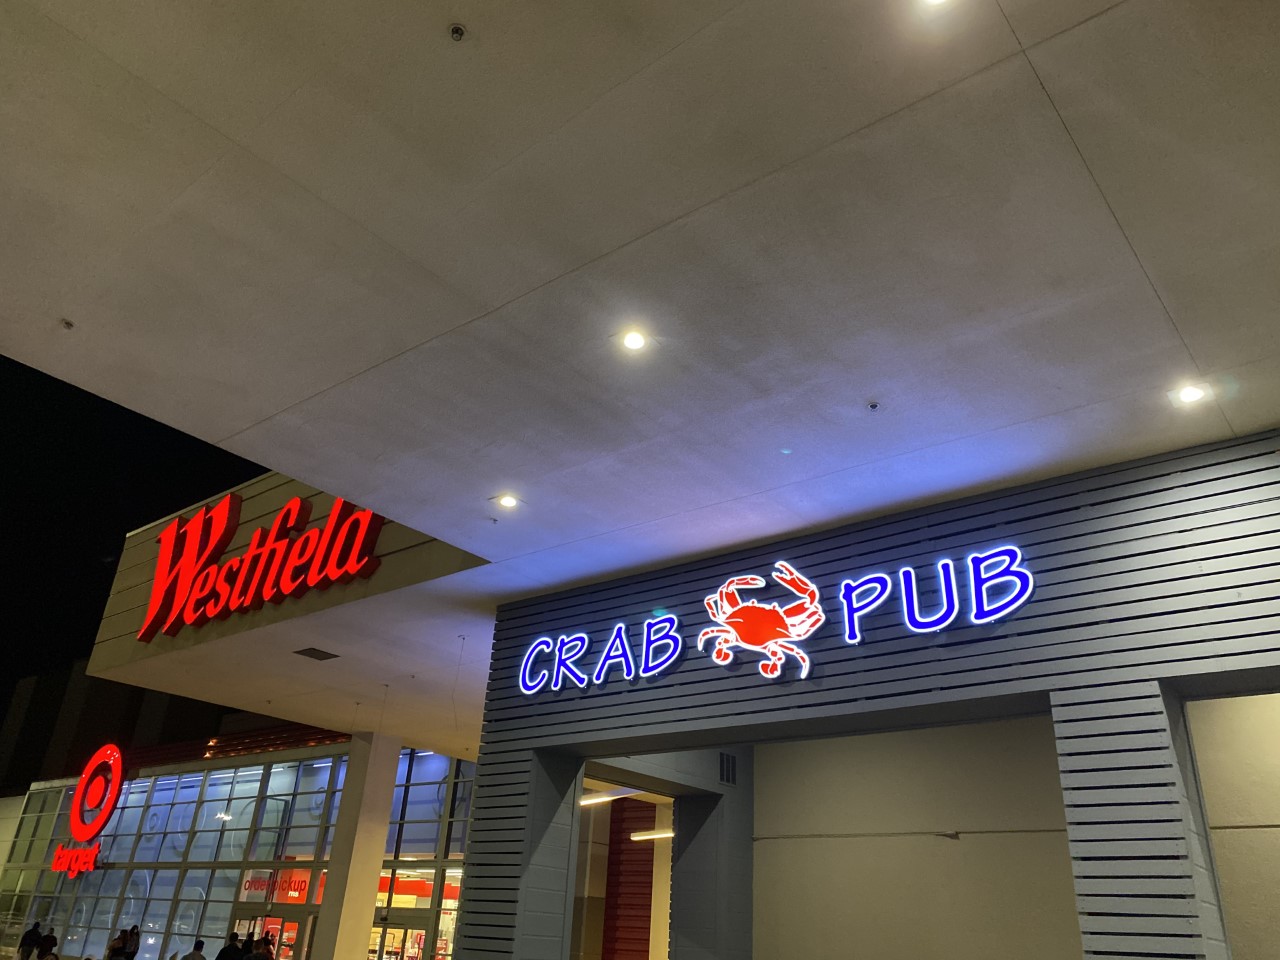 Crab Pub